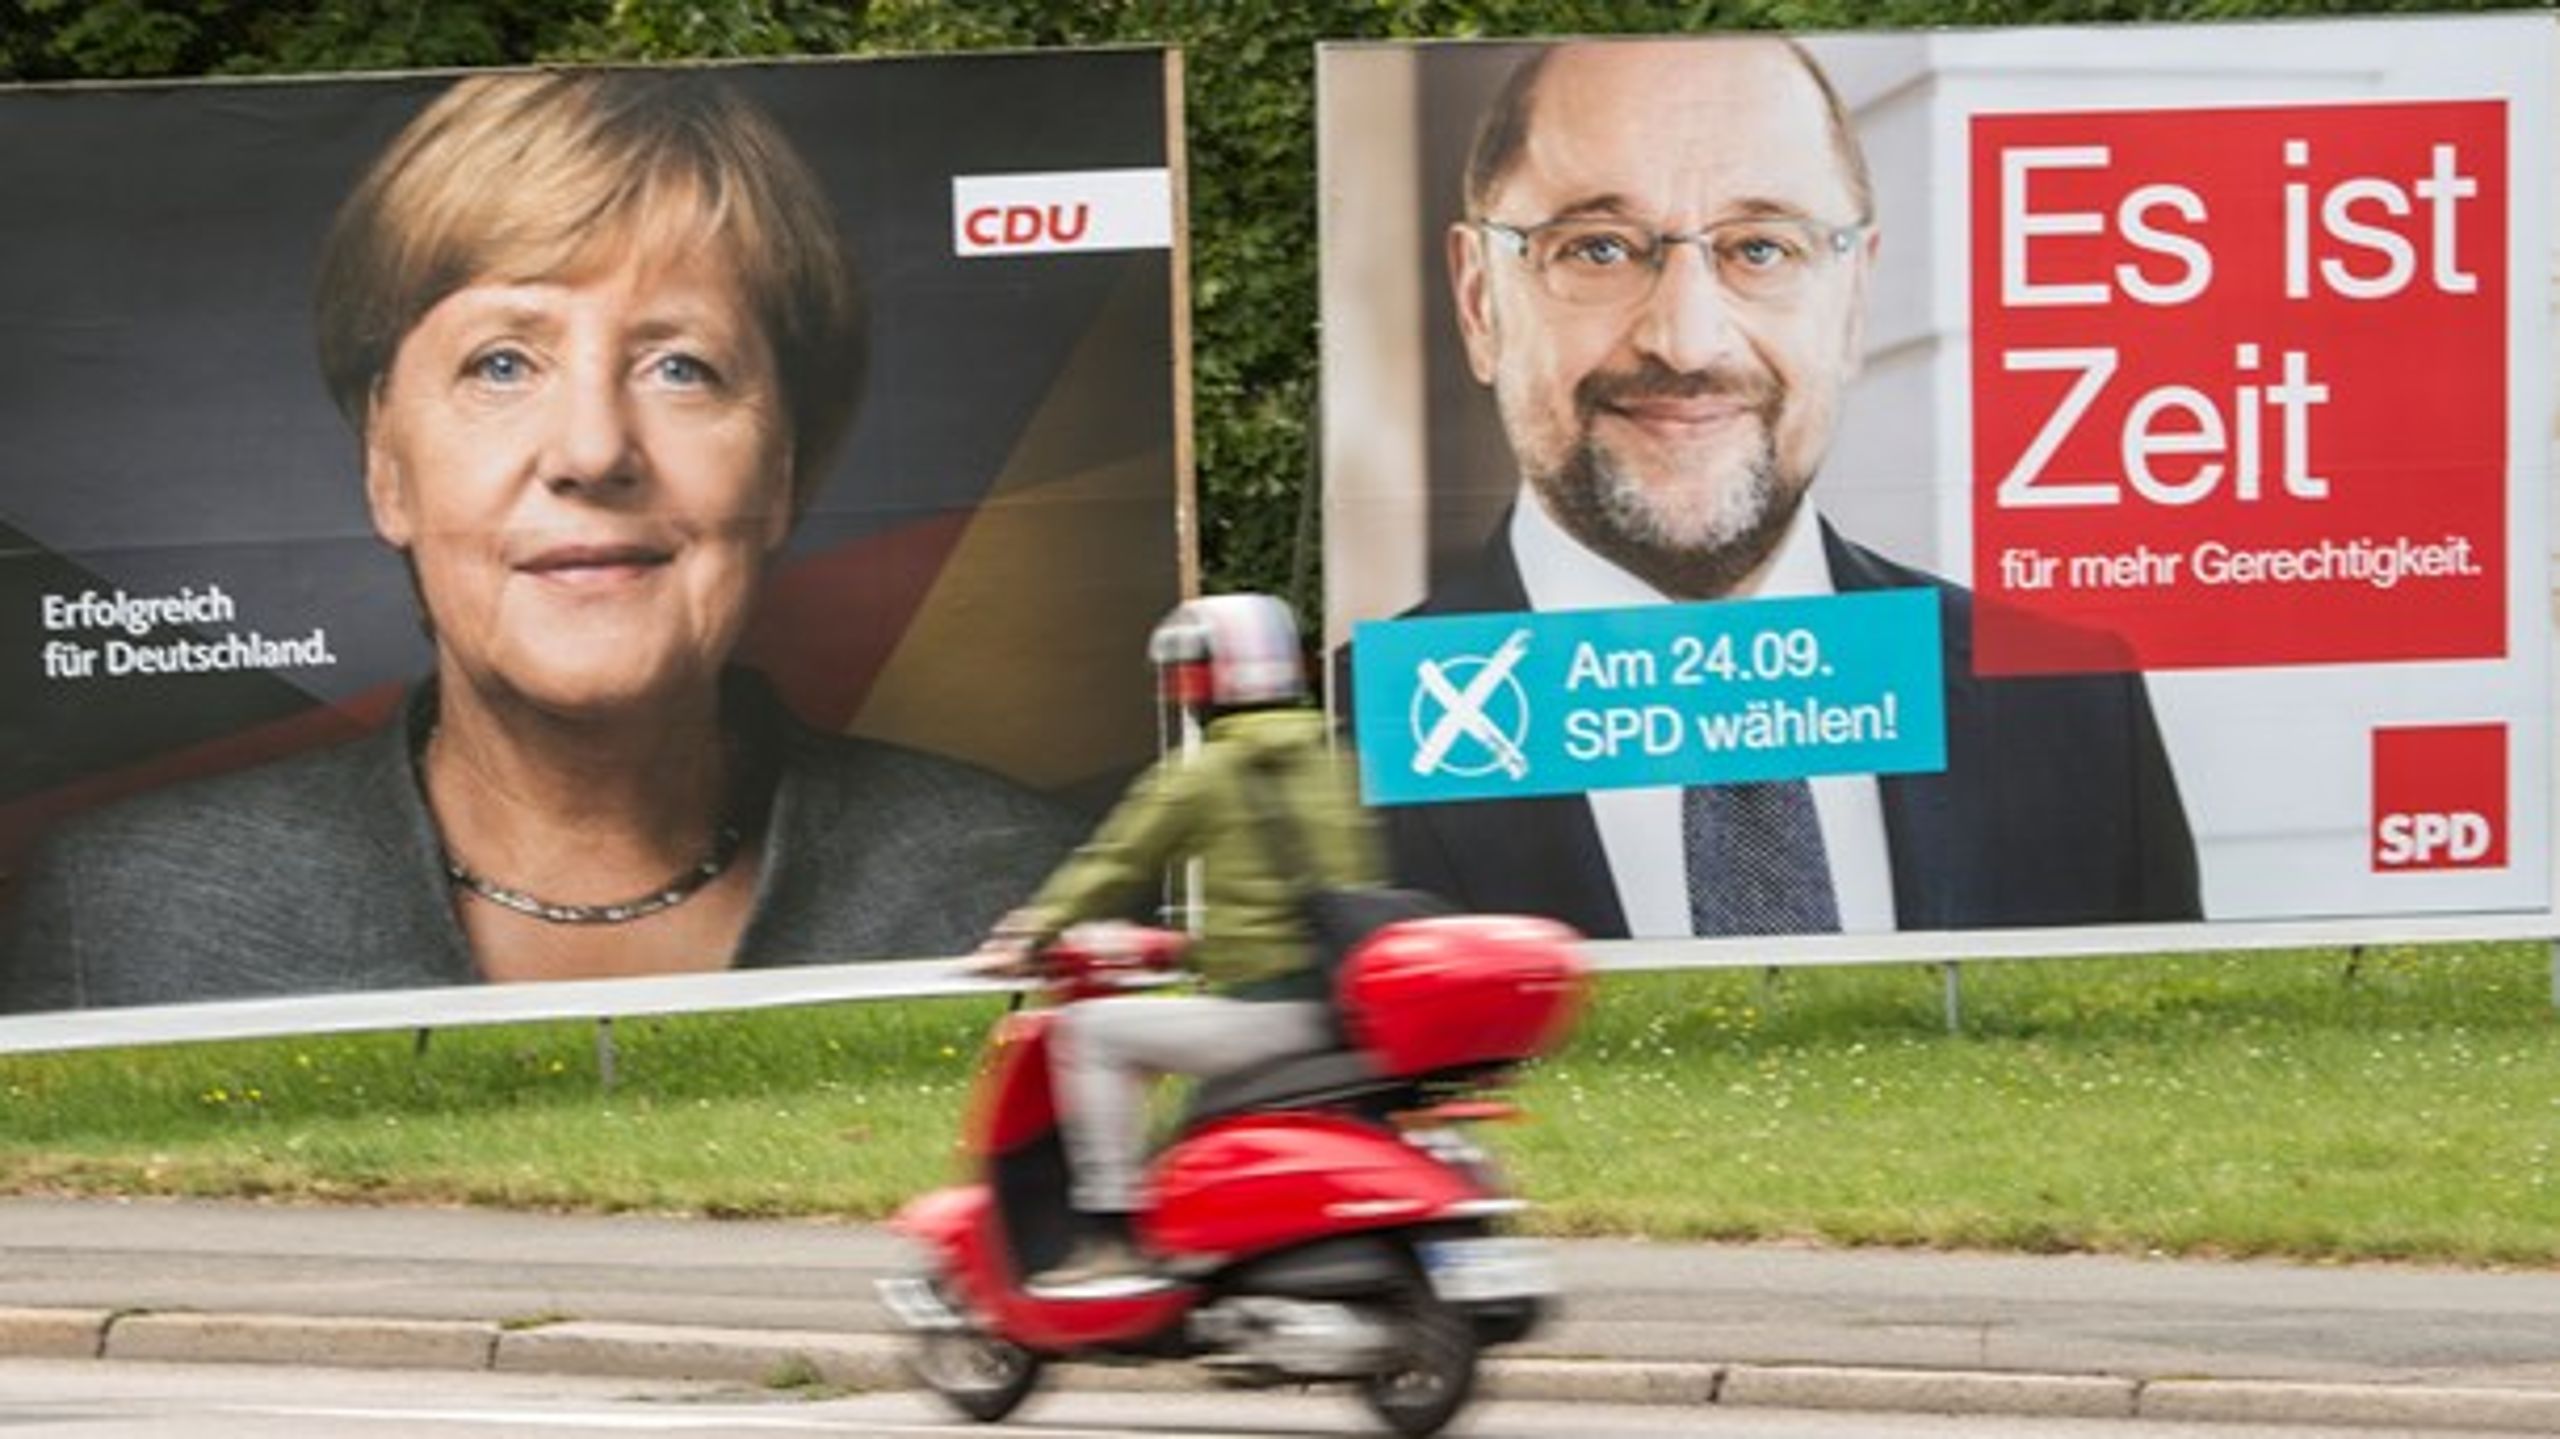 Denne uges analyse i "Parlamentet" handler om det mulige regeringsforhold mellem Angela Merkel og Martin Schulz.